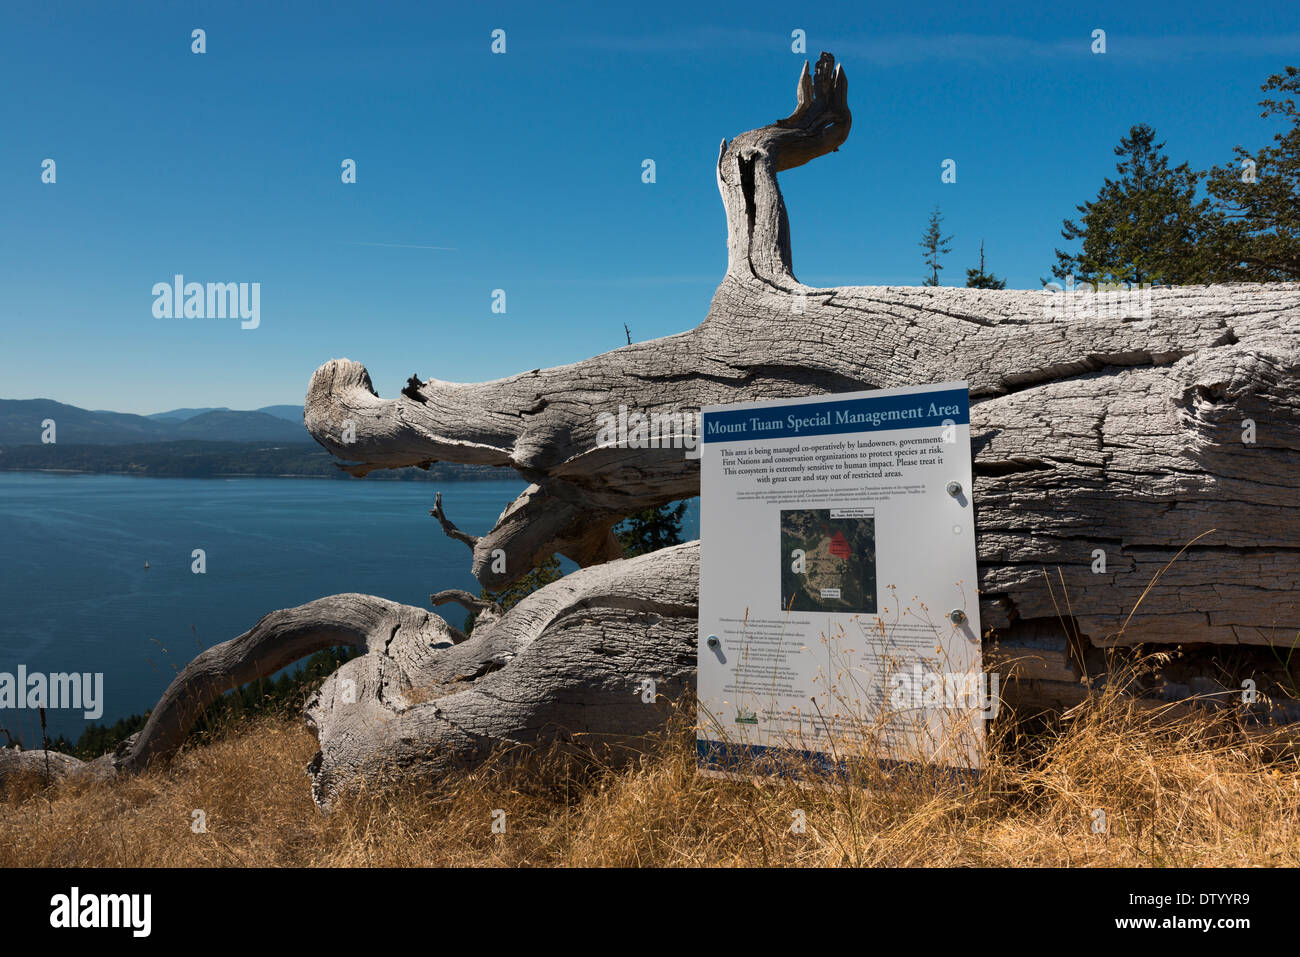 Mt Tuam zone écologique sensible et zone spéciale de gestion, Salt Spring Island, British Columbia Canada Banque D'Images